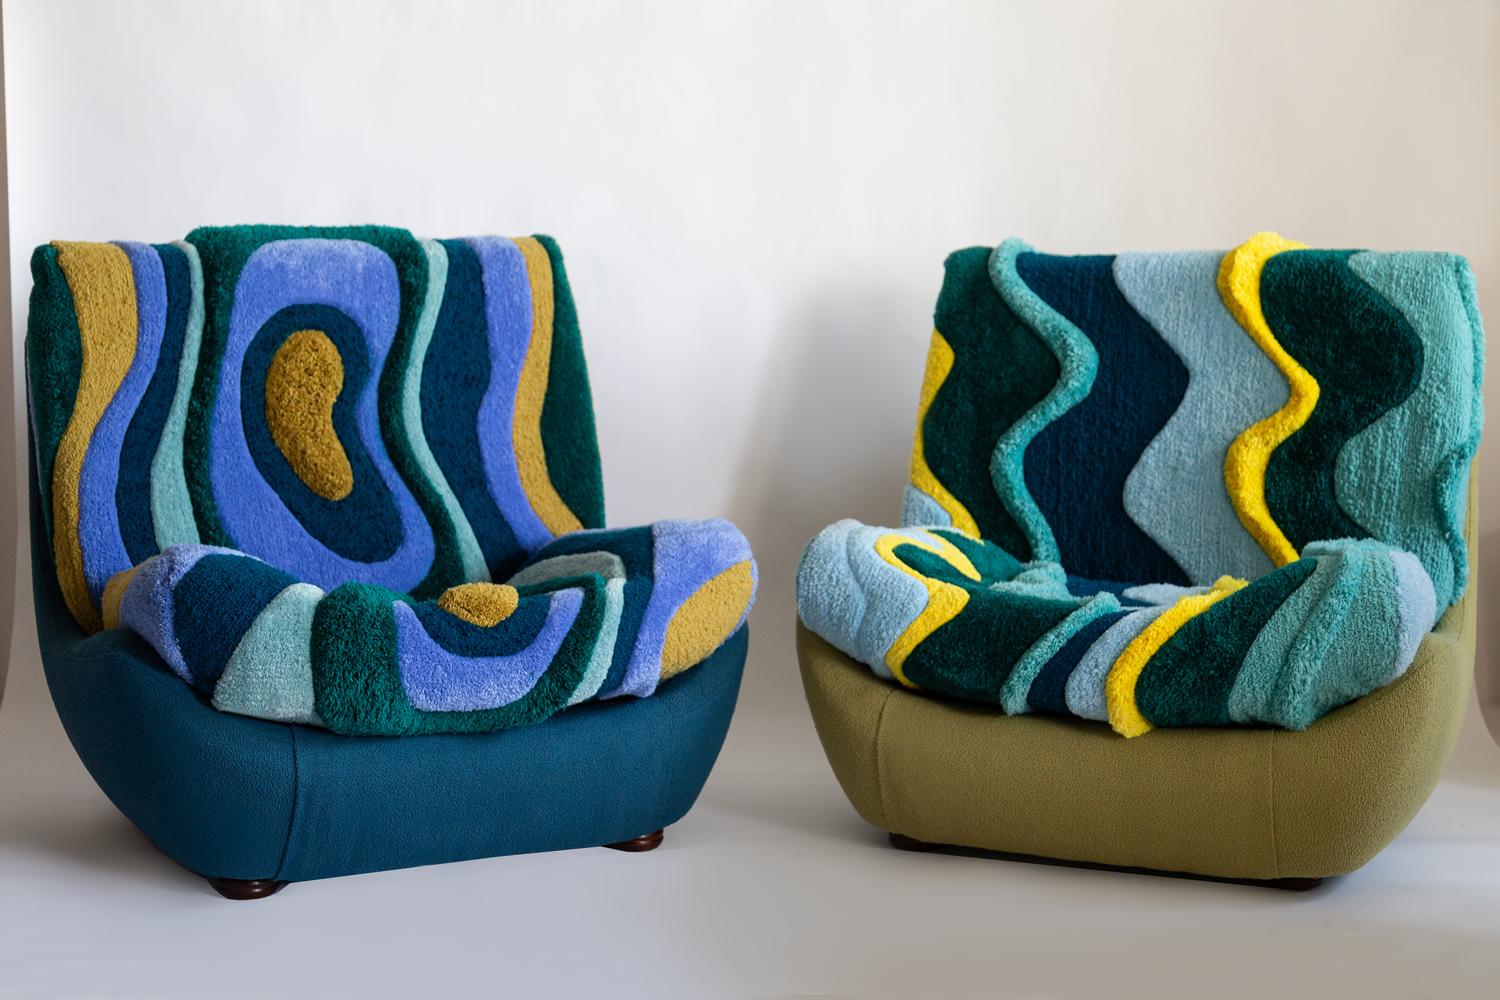 Atlantis Sessel aus den 1960er Jahren, hergestellt in der schlesischen Möbelfabrik in Swiebodzin/Polen, sind zur Zeit einzigartig. 

Aufgrund ihrer Abmessungen fügen sie sich auch in kleinen Wohnungen perfekt ein und bieten Komfort und eine schöne